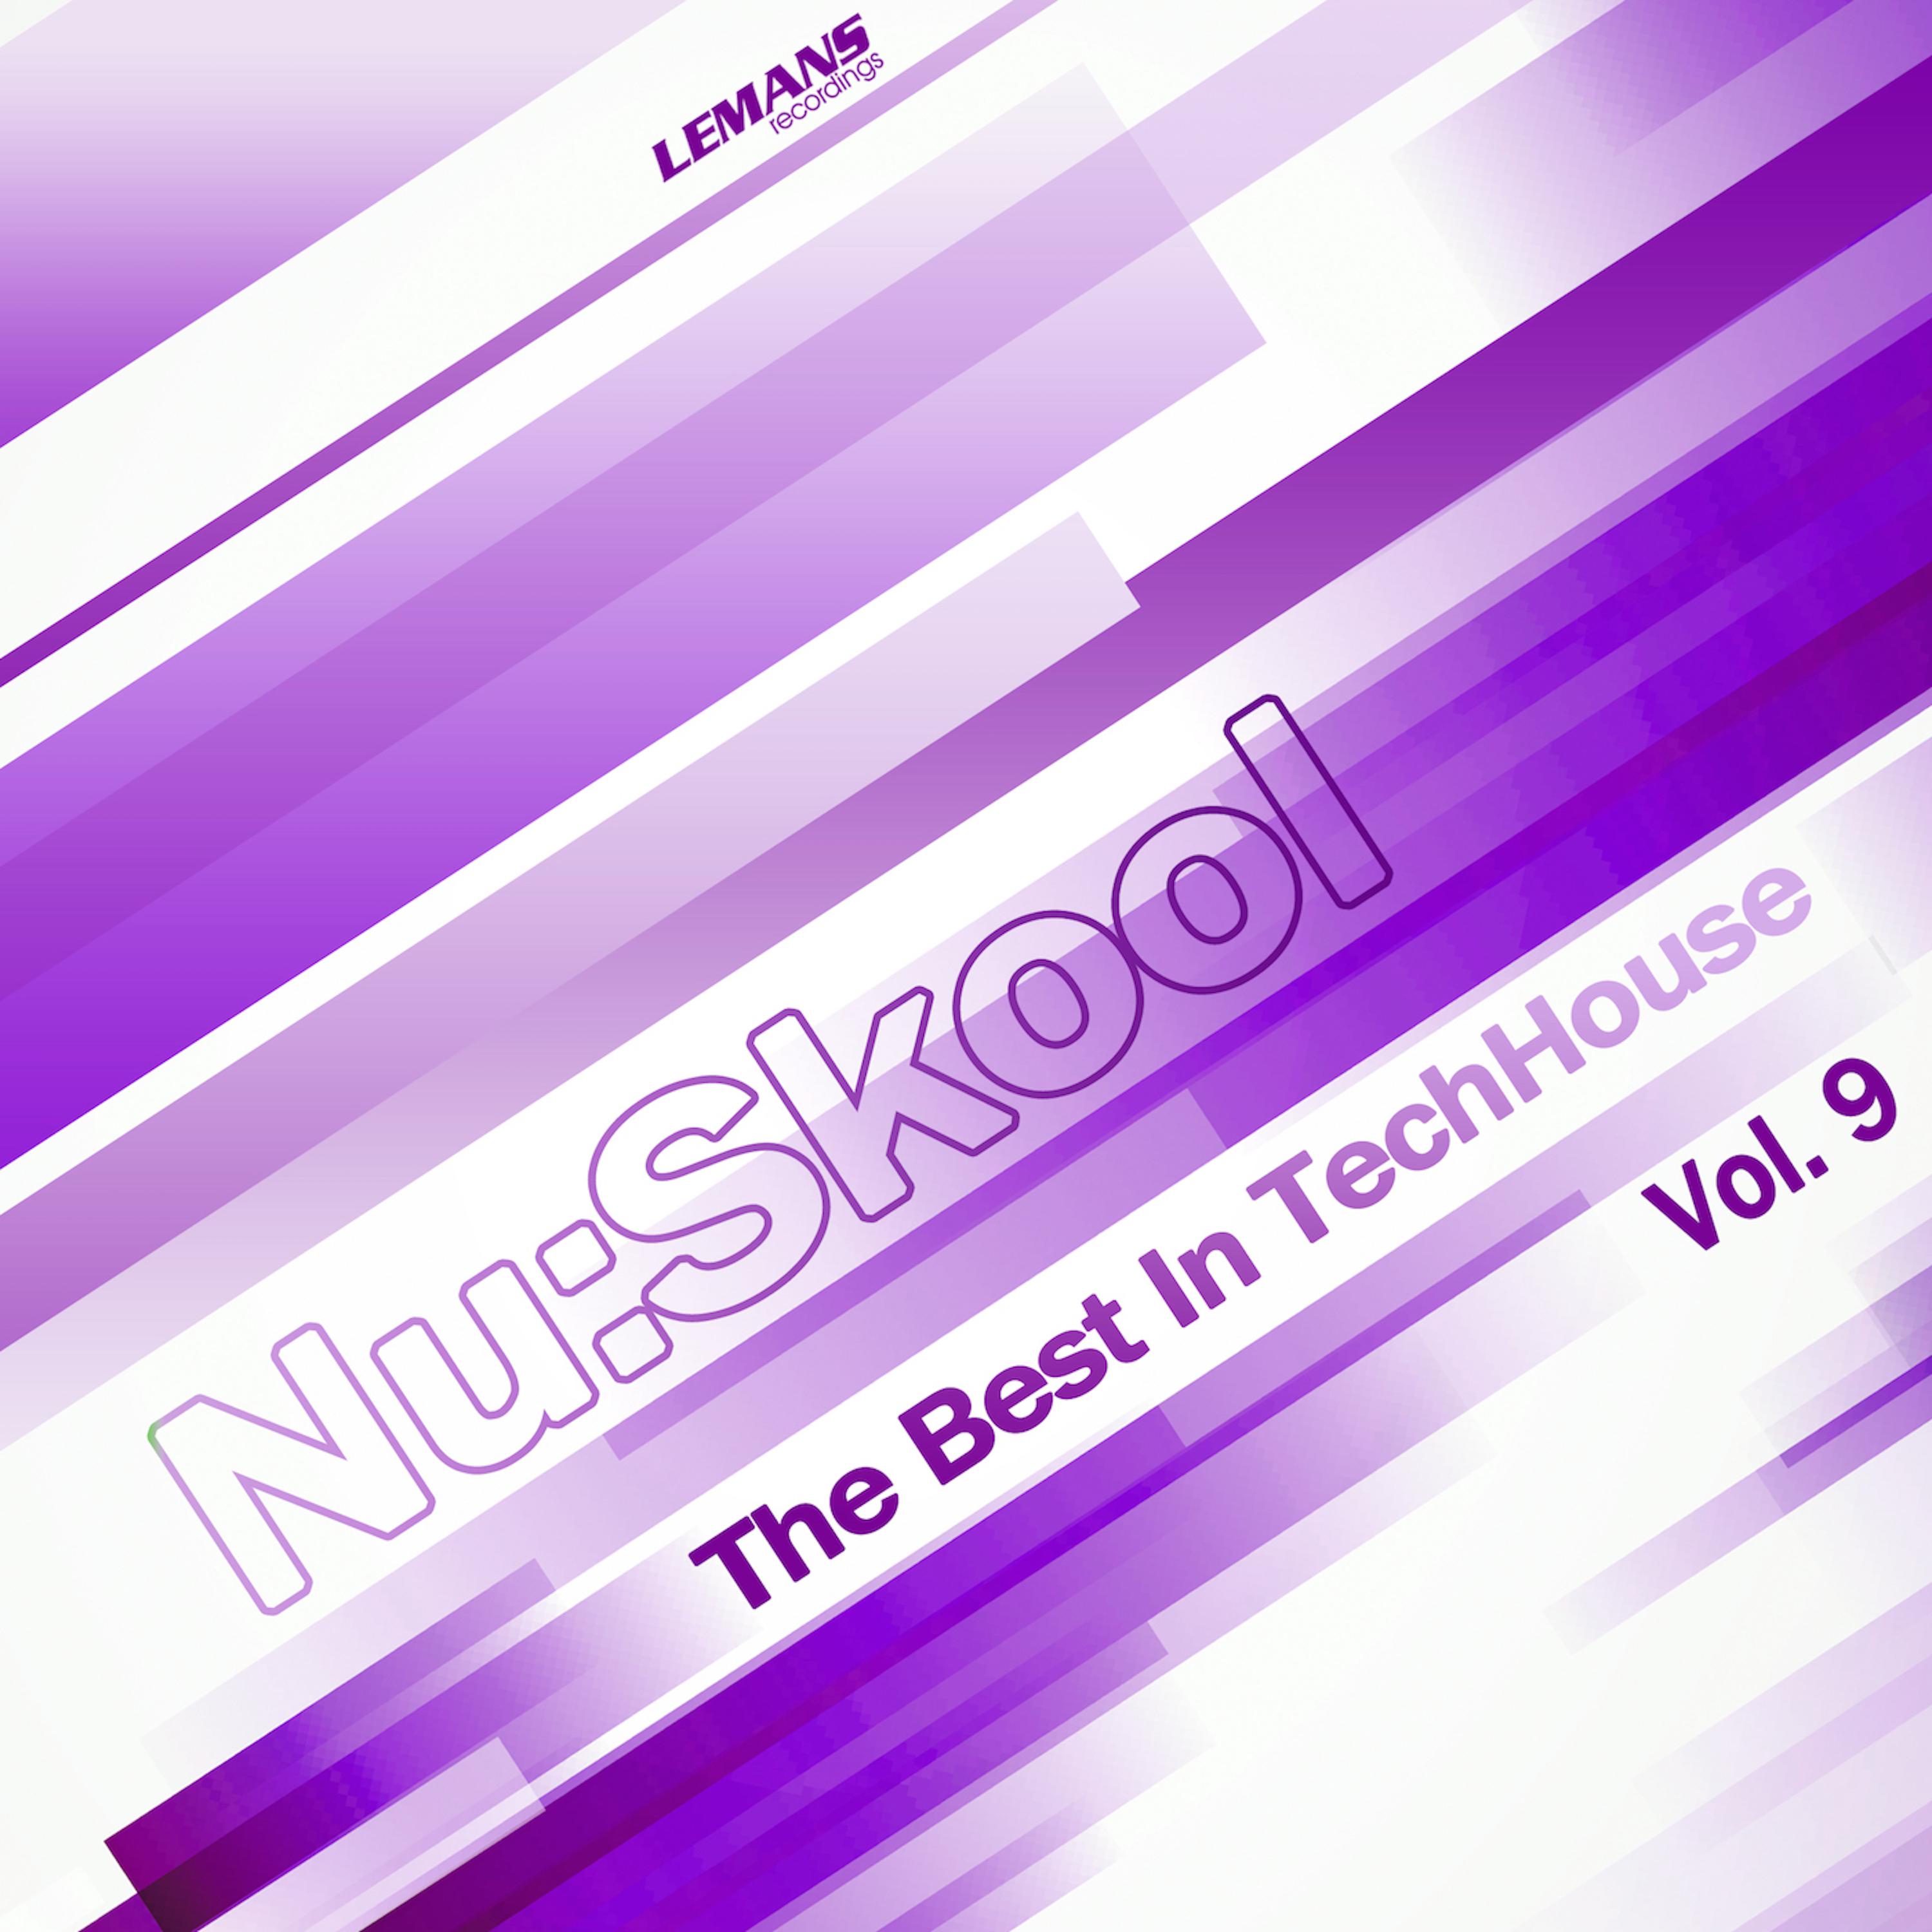 Nu:Skool - The Best in TechHouse, Vol. 9